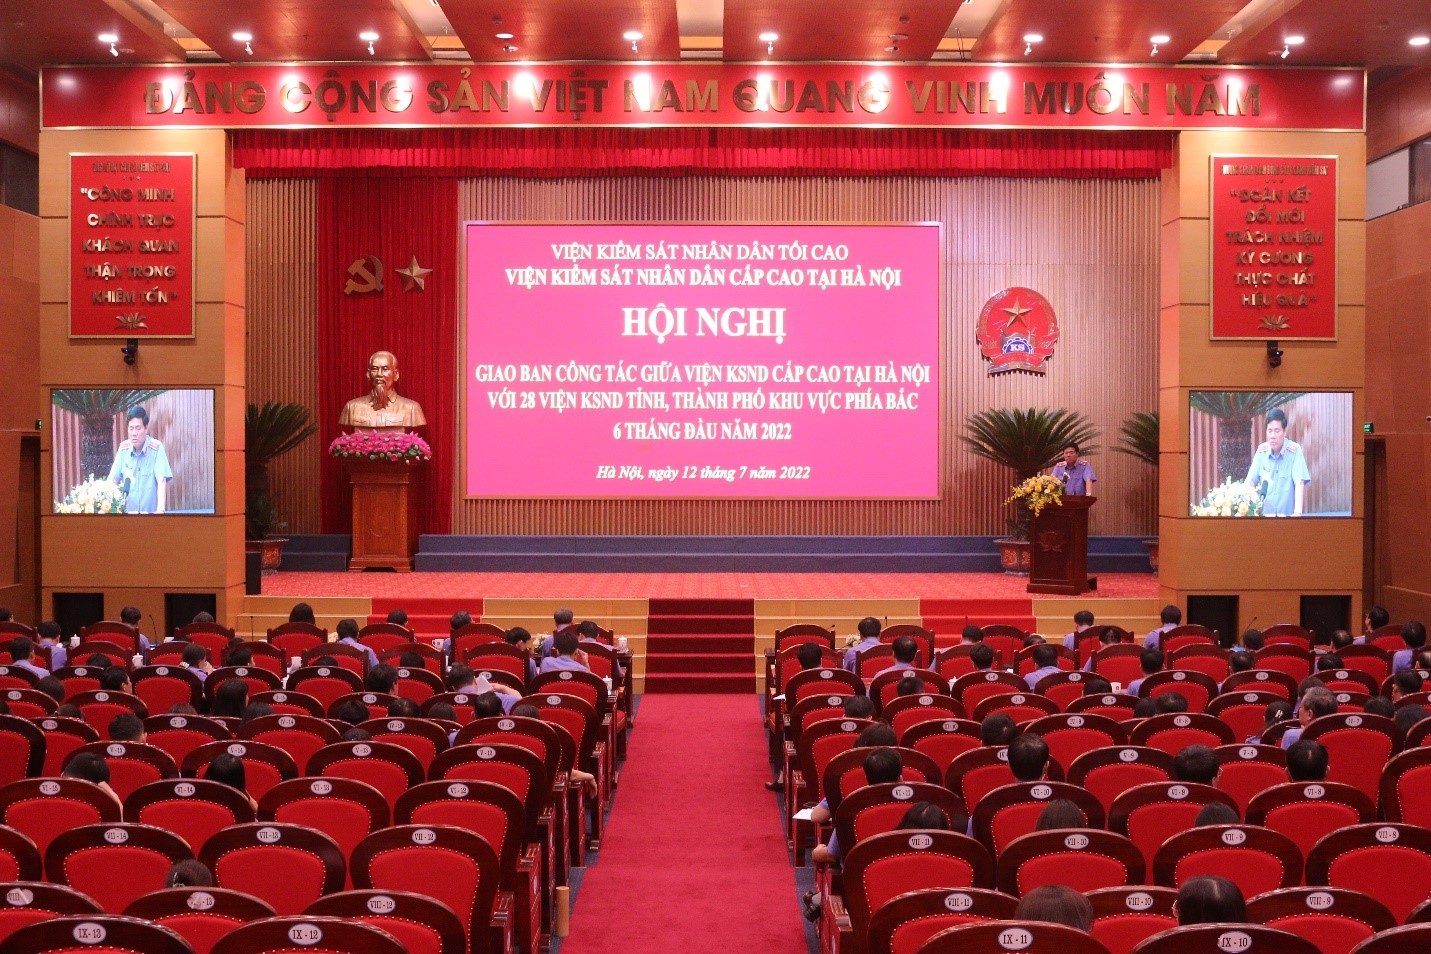 Hội nghị giao ban công tác 6 tháng đầu năm 2022 của Viện kiểm sát nhân dân cấp cao tại Hà Nội với Viện kiểm sát nhân dân các tỉnh, thành phố khu vực phía Bắc 